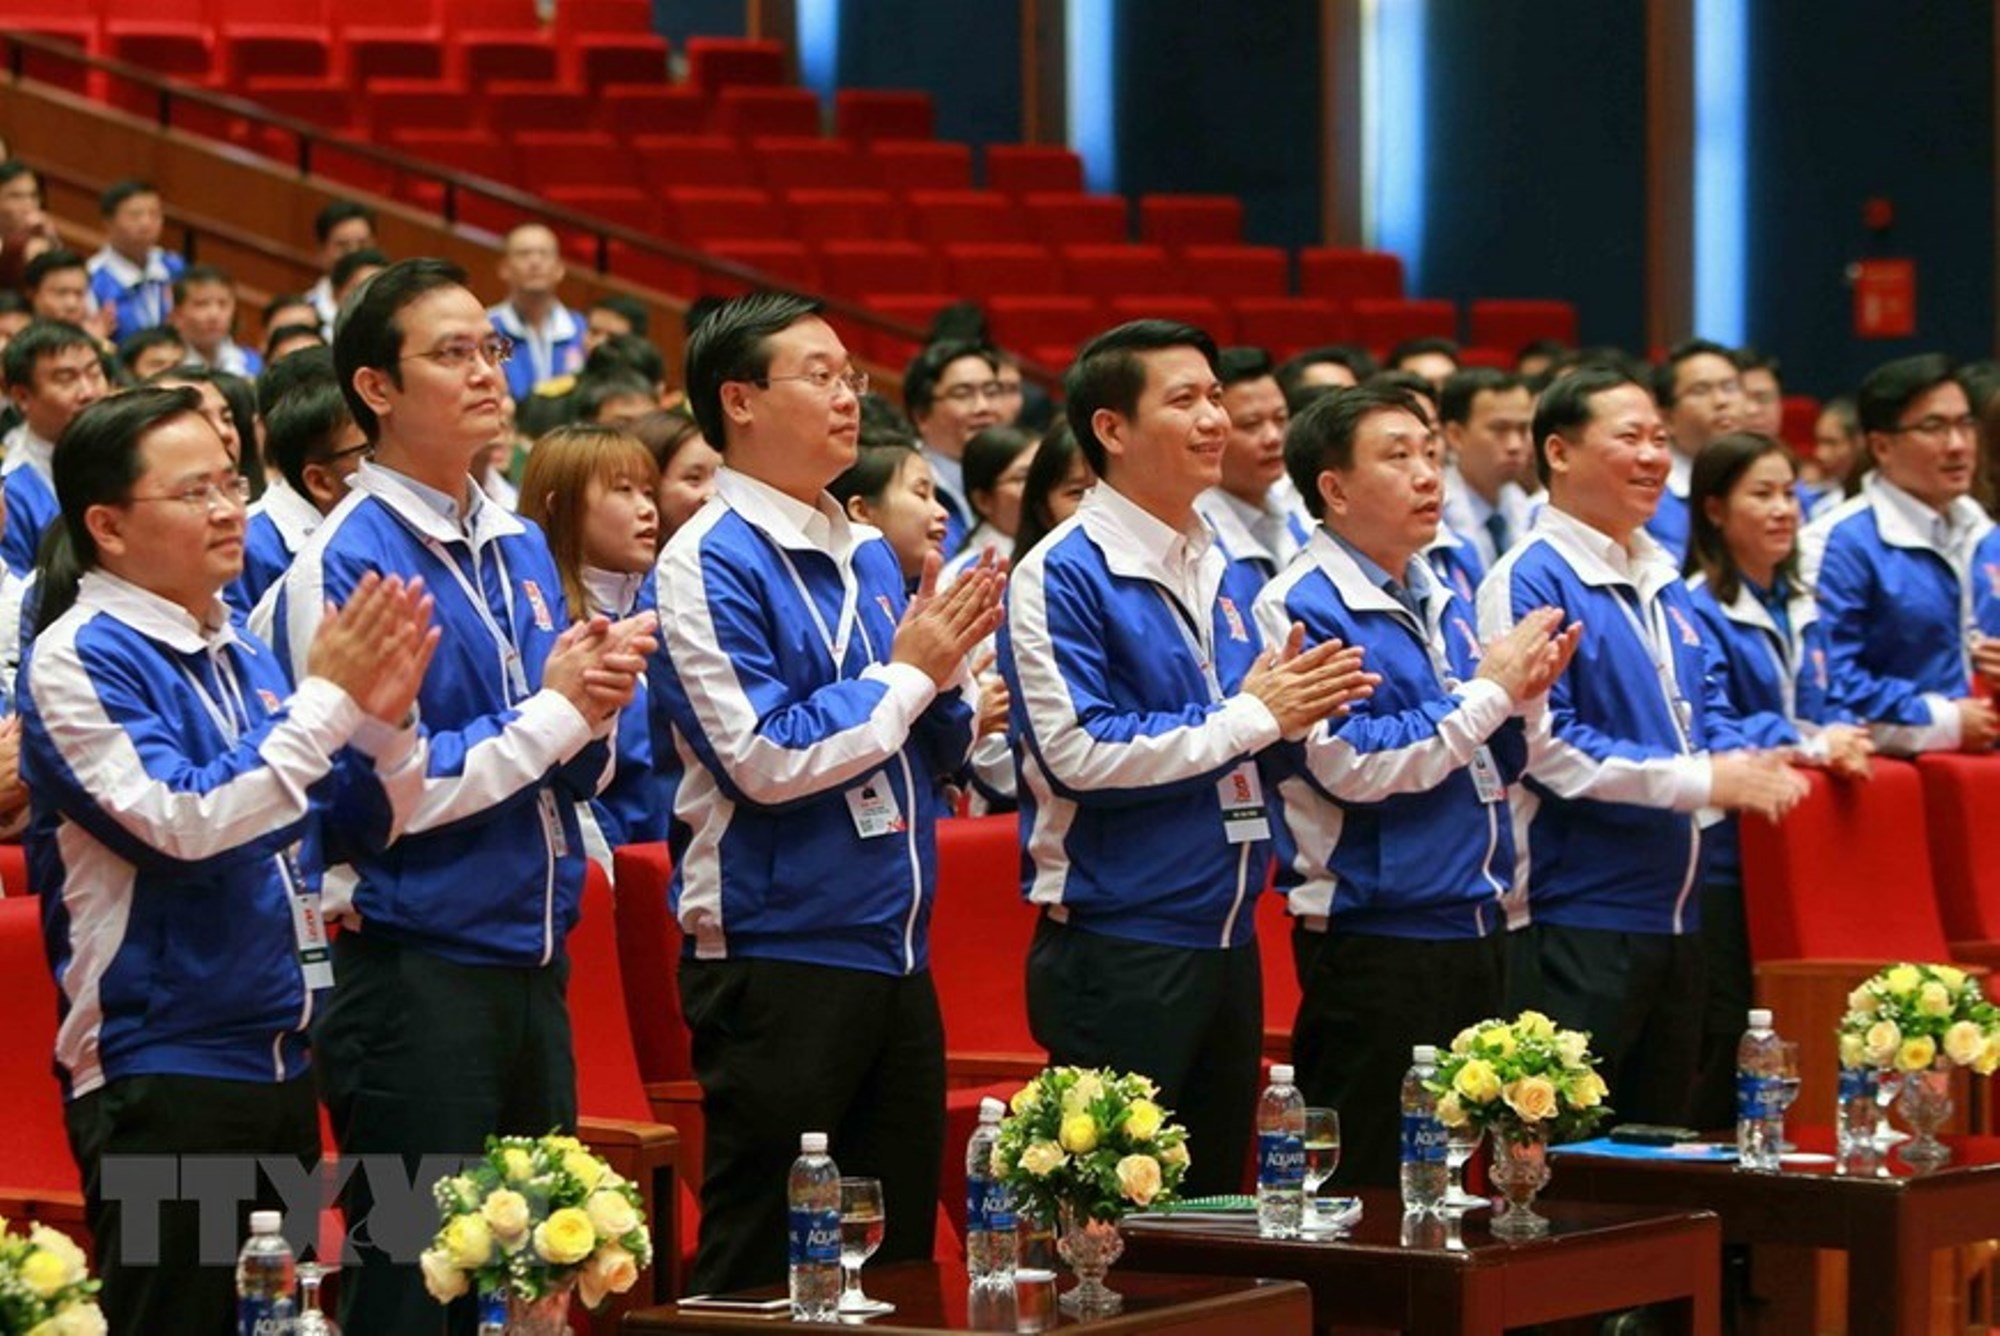 Đồng chí Nguyễn Anh Tuấn, Bí thư thứ nhất Trung ương Đoàn khóa XI (ngoài cùng bên trái) tham dự Đại hội Đại biểu toàn quốc Đoàn Thanh niên Cộng sản Hồ Chí Minh lần thứ XI, nhiệm kỳ 2017-2022. (Ảnh: TTXVN)